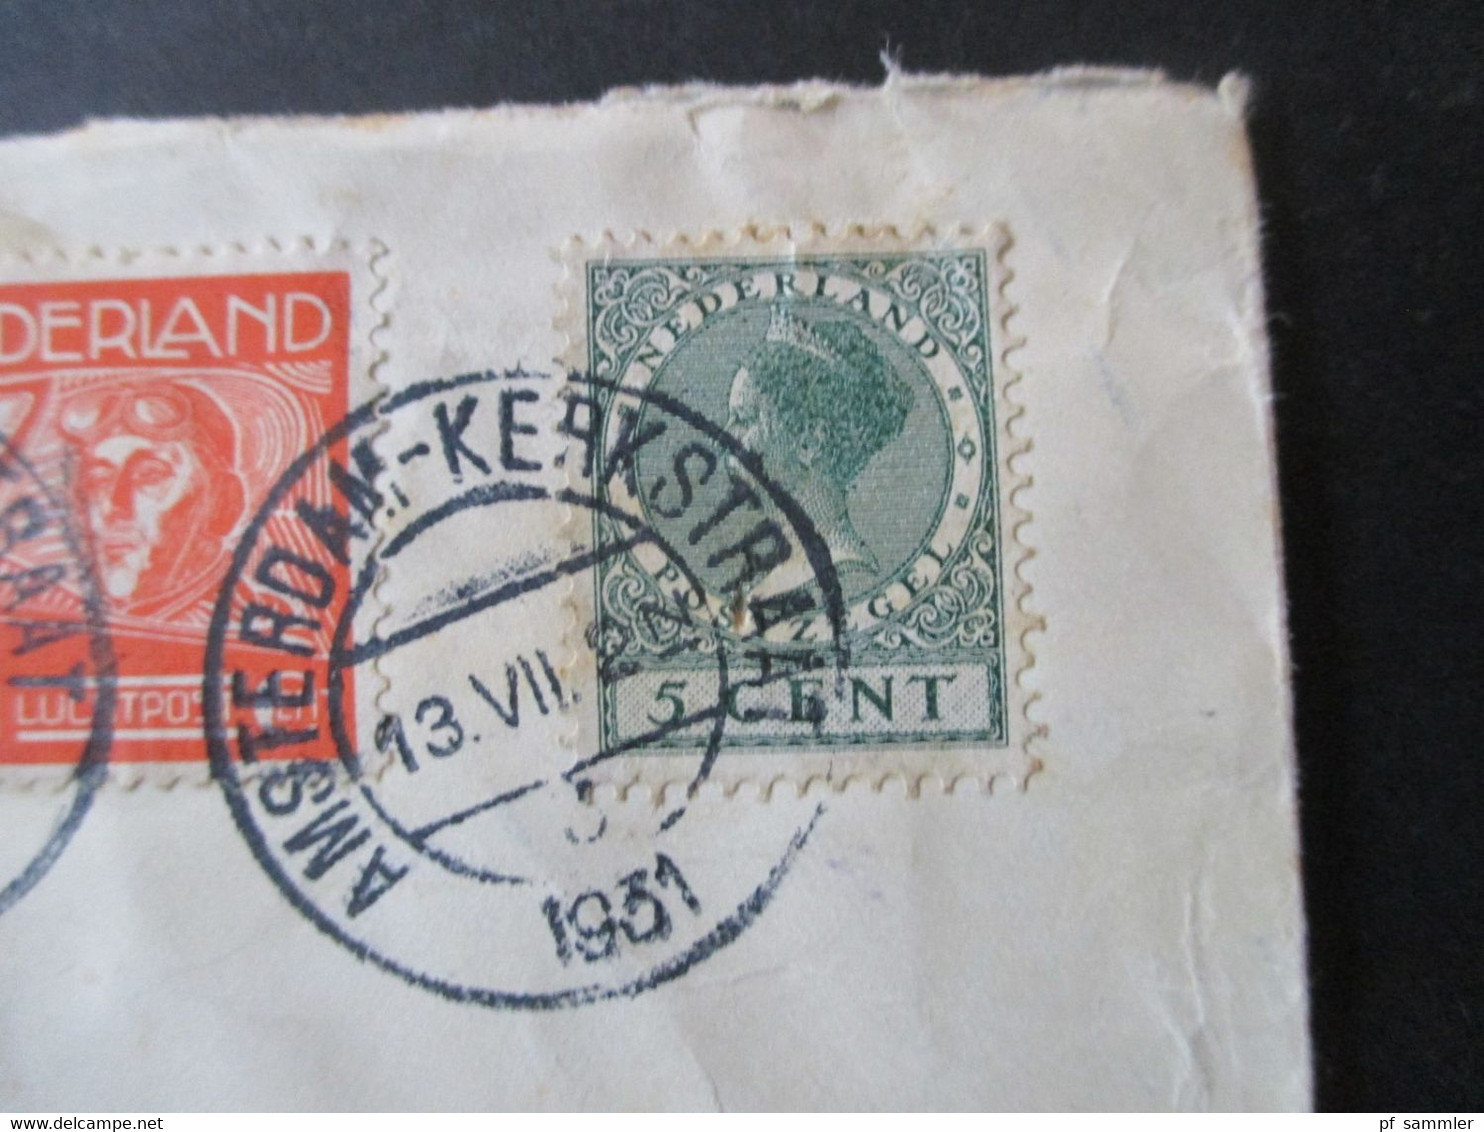 Niederlande 1931 Einschreiben Luftpost Amsterdam Kerkstraat - Wien Rücks. Aufkleber K.L.M. Royal Dutch Air Lines Holland - Briefe U. Dokumente